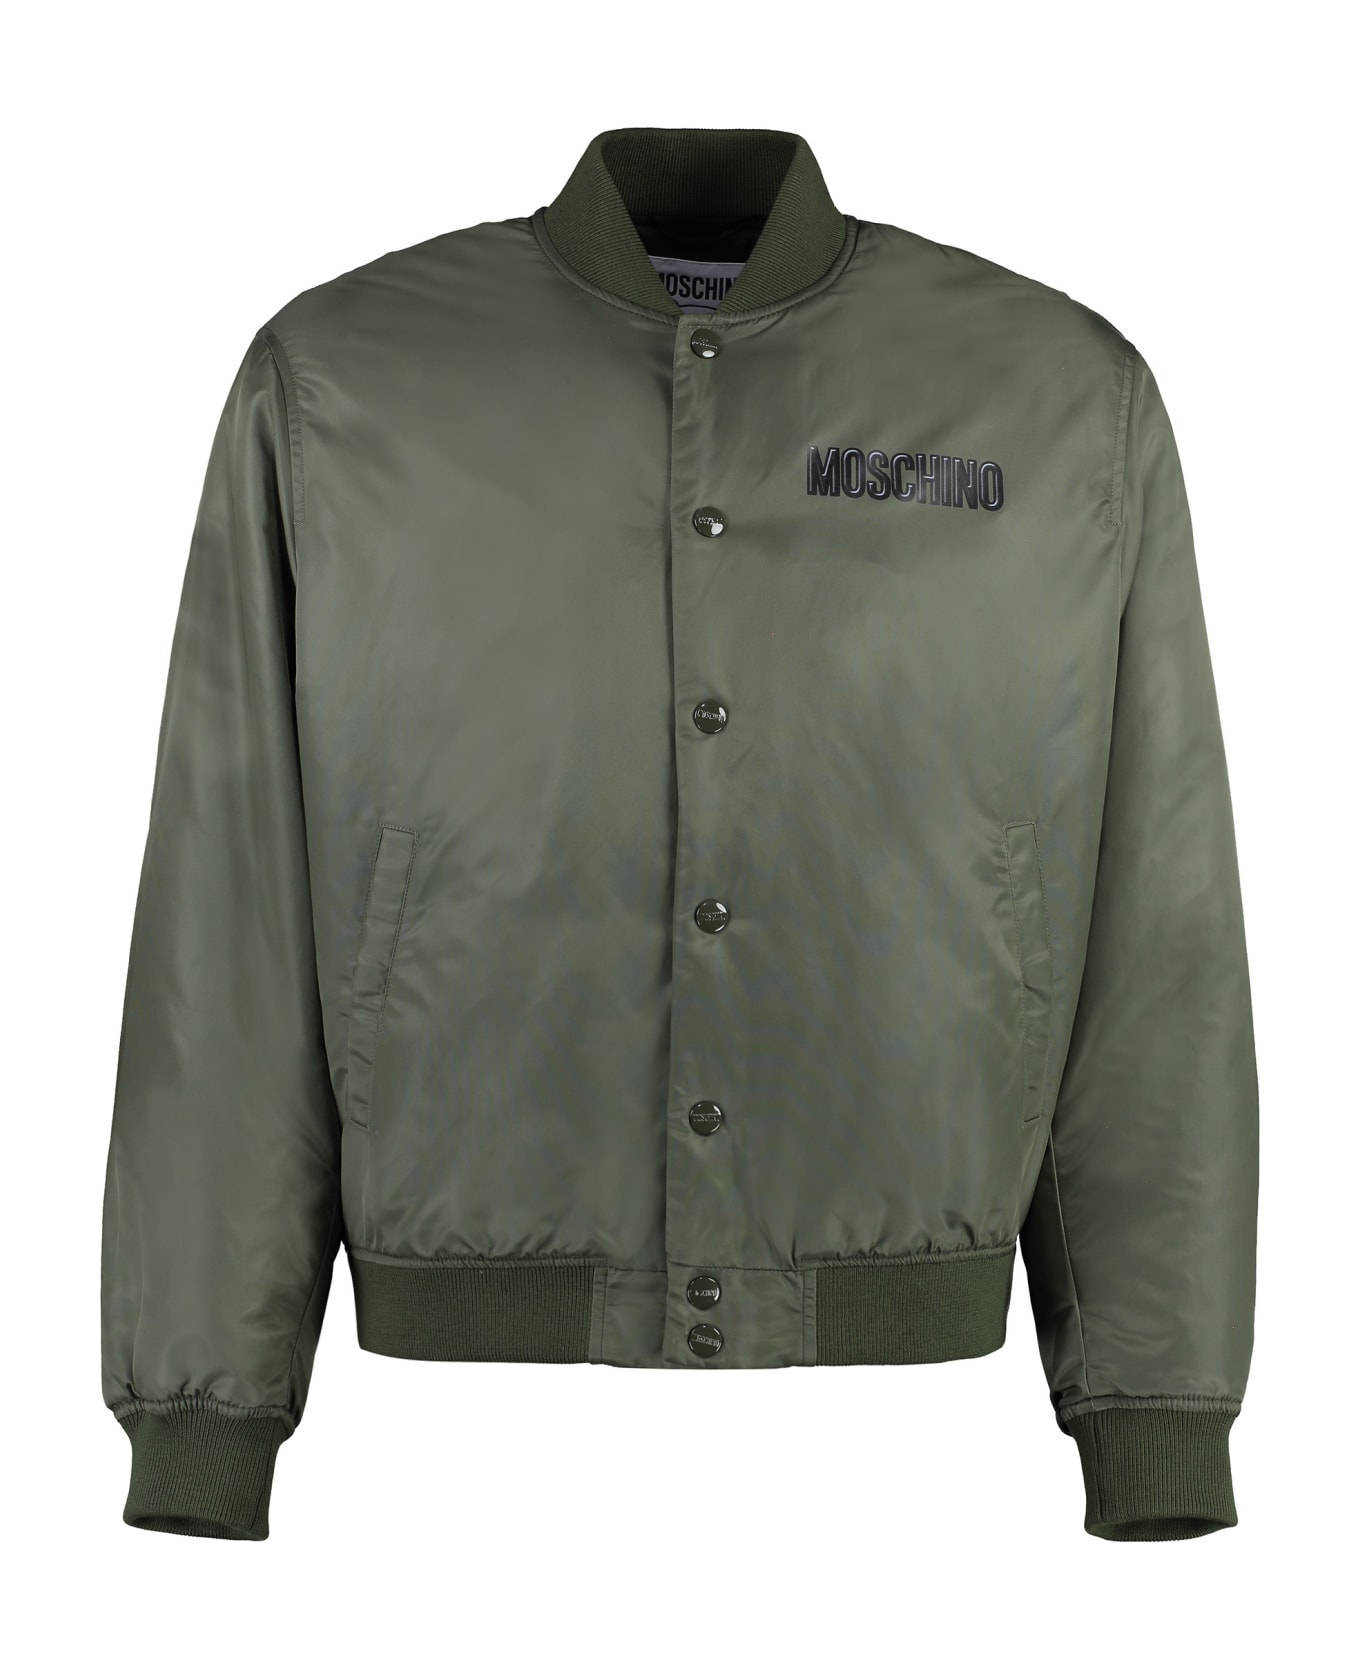 Moschino Nylon Bomber Jacket - green